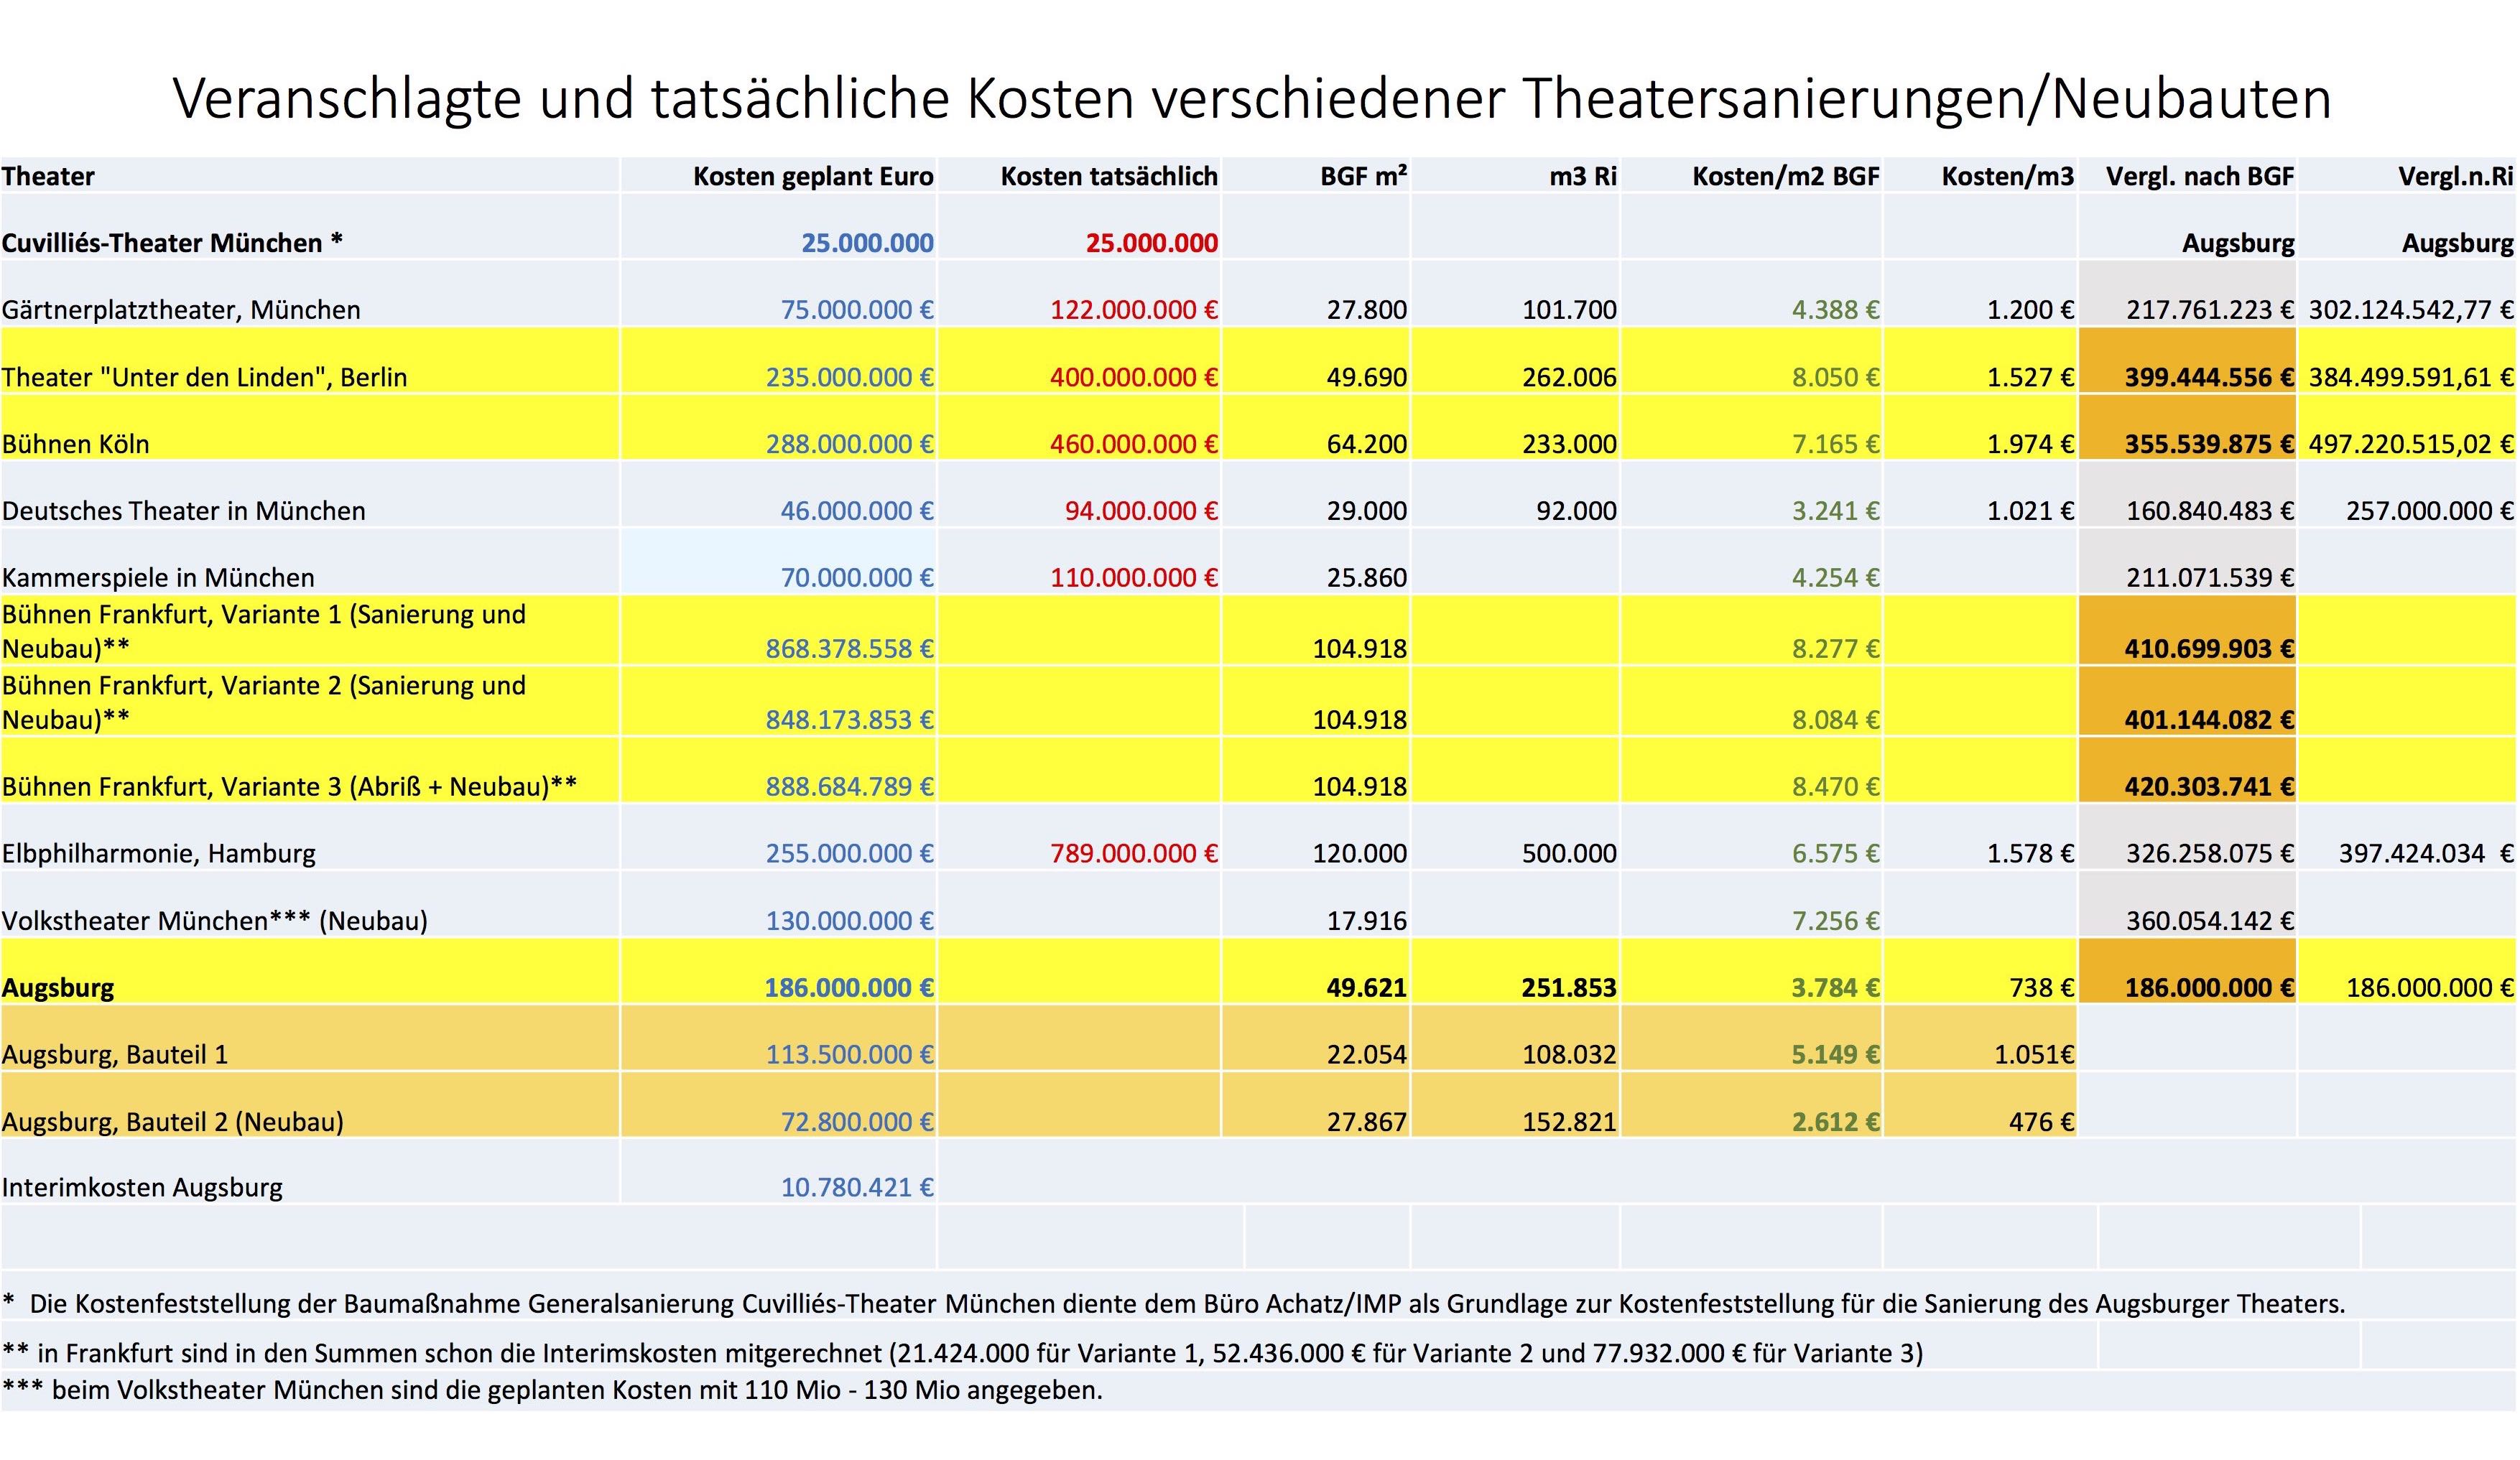 Vergleichstabelle Theatersanierungen in Deutschland (c) Volker Schafitel